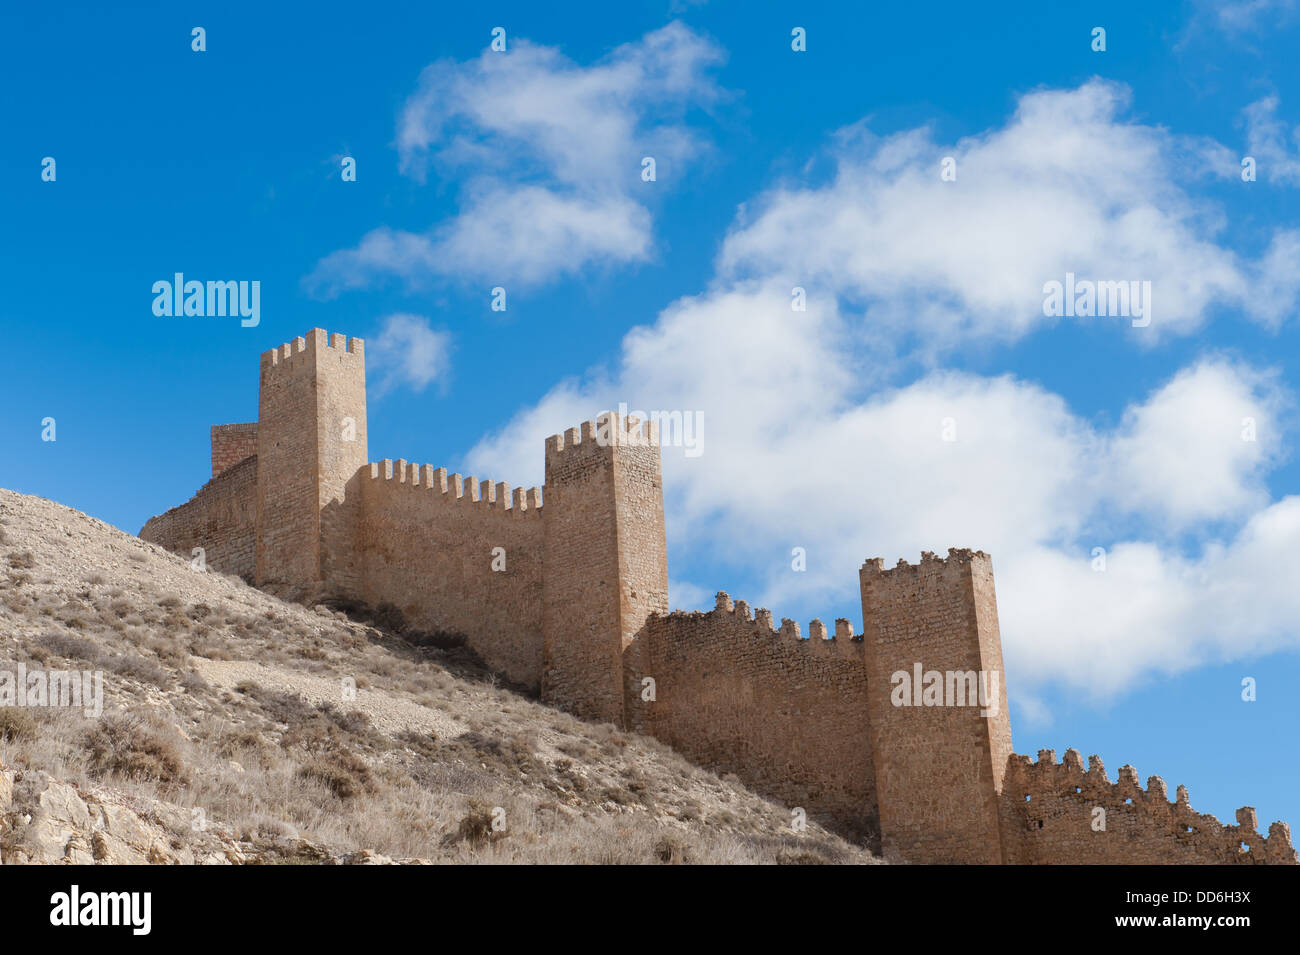 Les murs de la ville en pierre médiévale espagnole sur la colline contre un ciel bleu, Albarracin, province de Teruel, Aragon, Espagne Banque D'Images